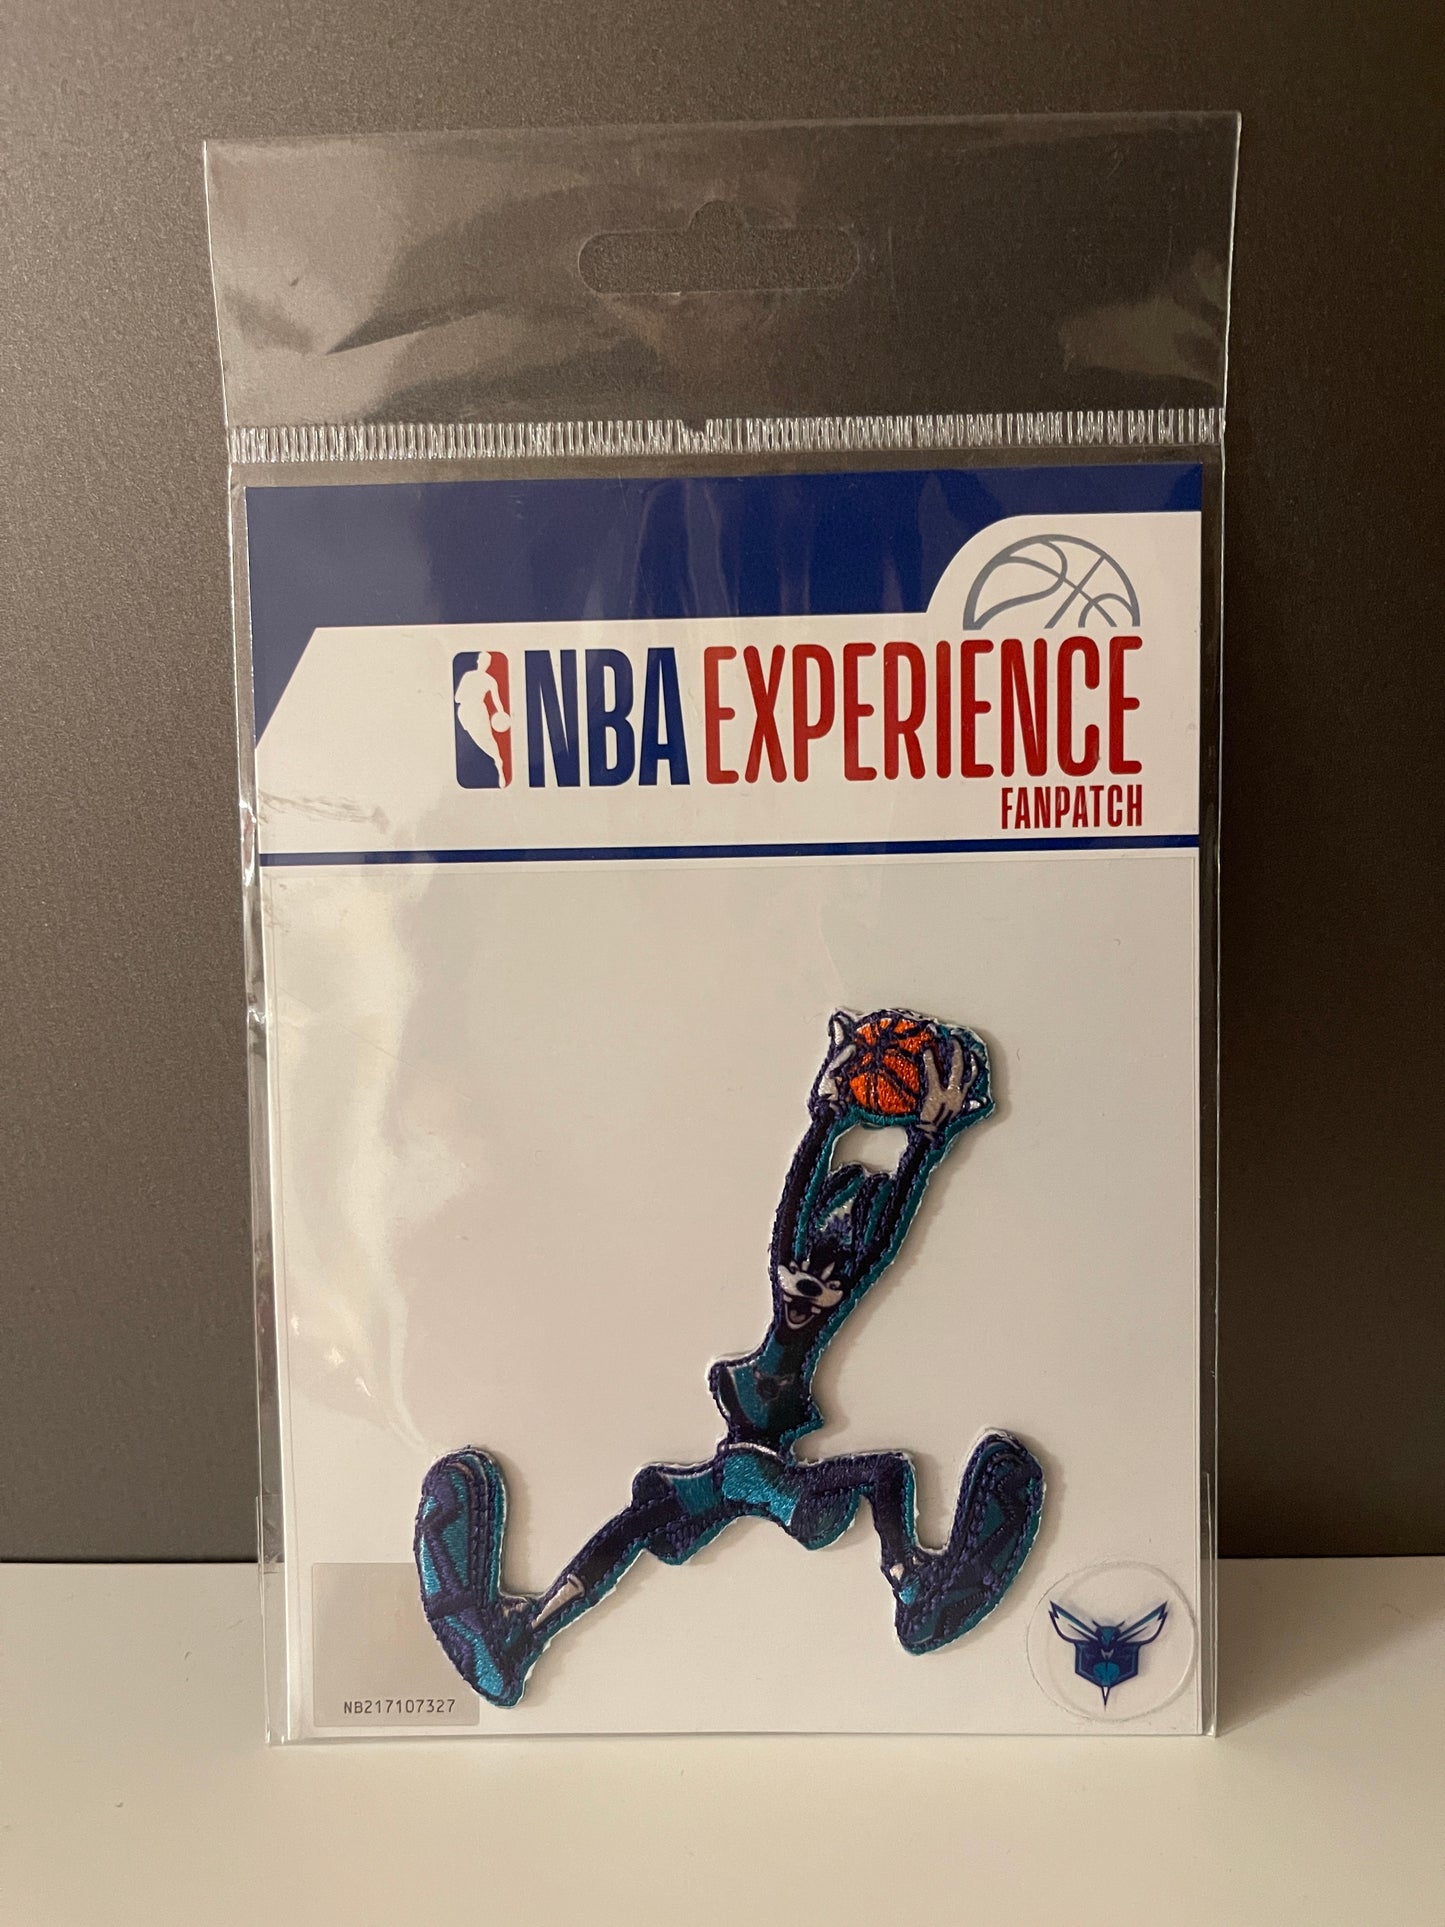 Disney NBA Experience Fanpatch / Patch Basketball verschiedene Motive